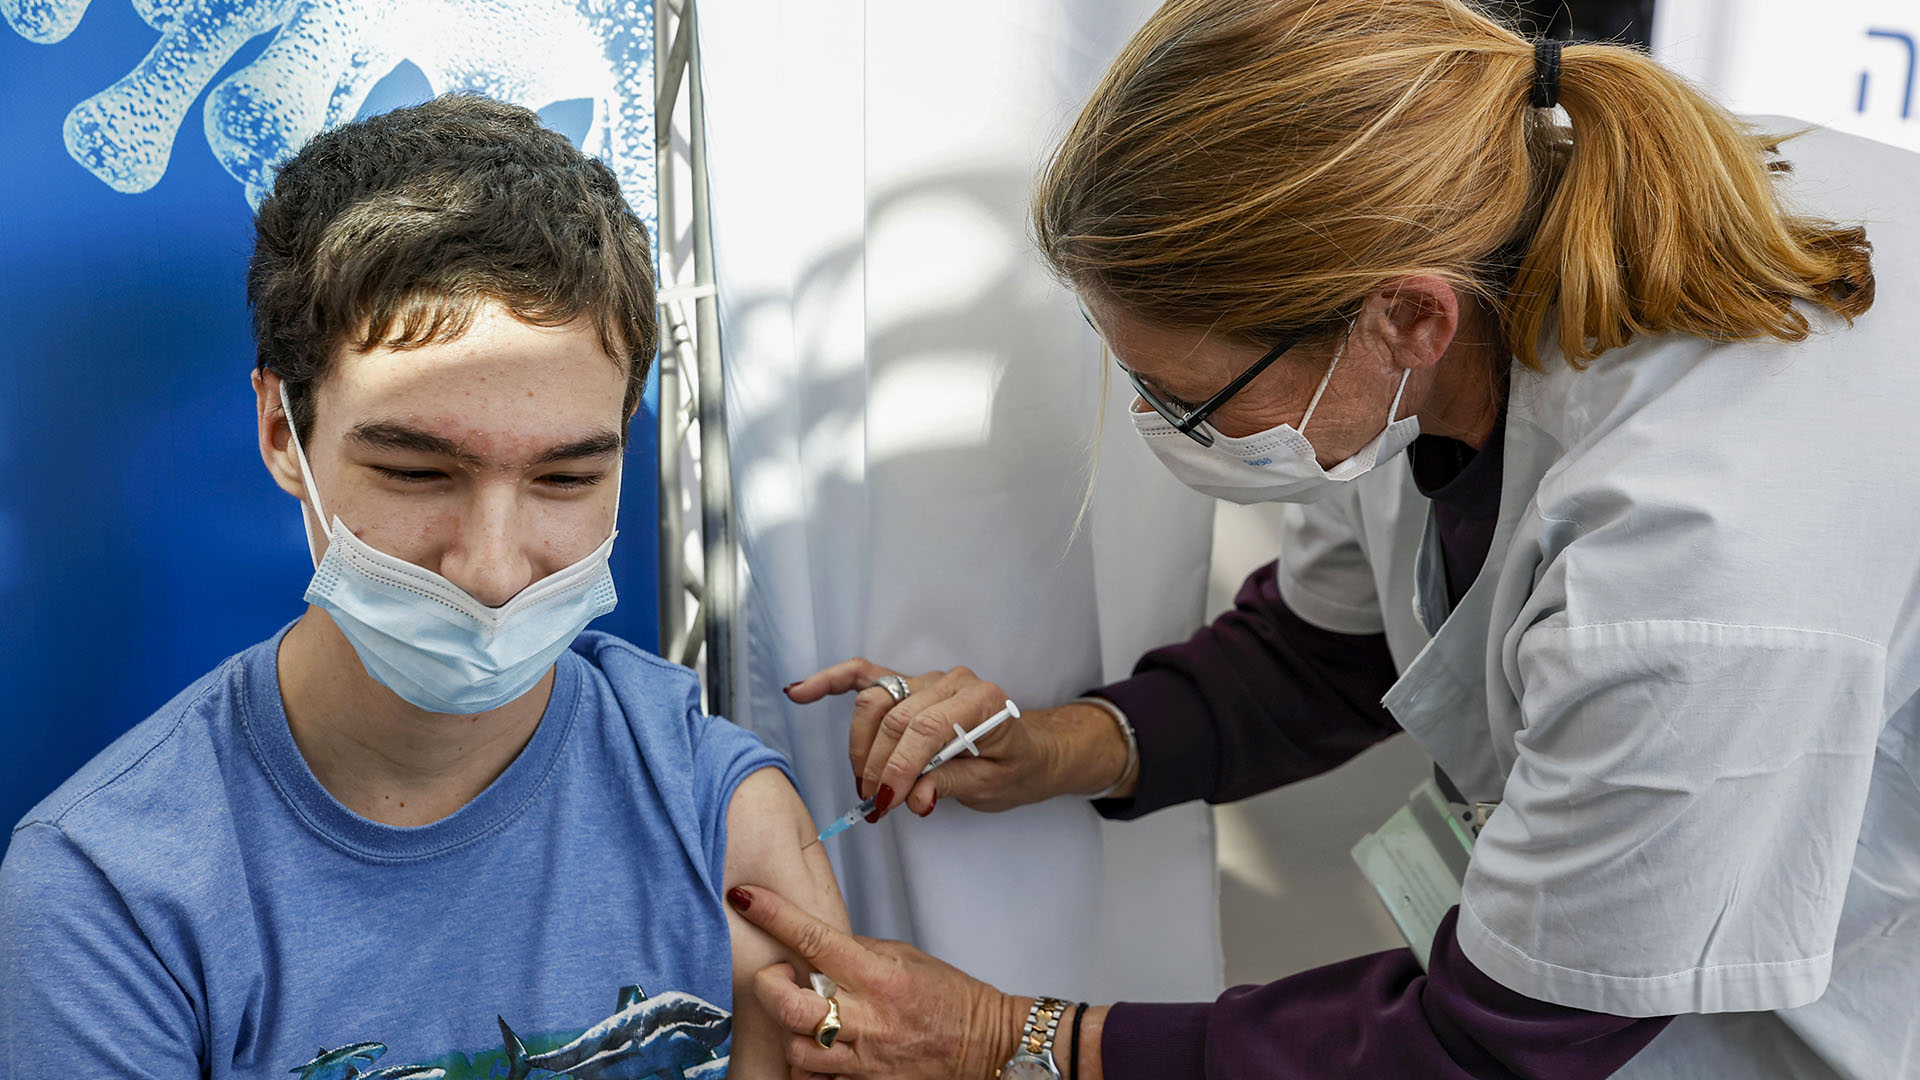 La vacunación de los niños también es clave para aumentar el nivel de inmunidad colectiva en la población y reducir el número de hospitalizaciones y muertes (Photo by JACK GUEZ / AFP)